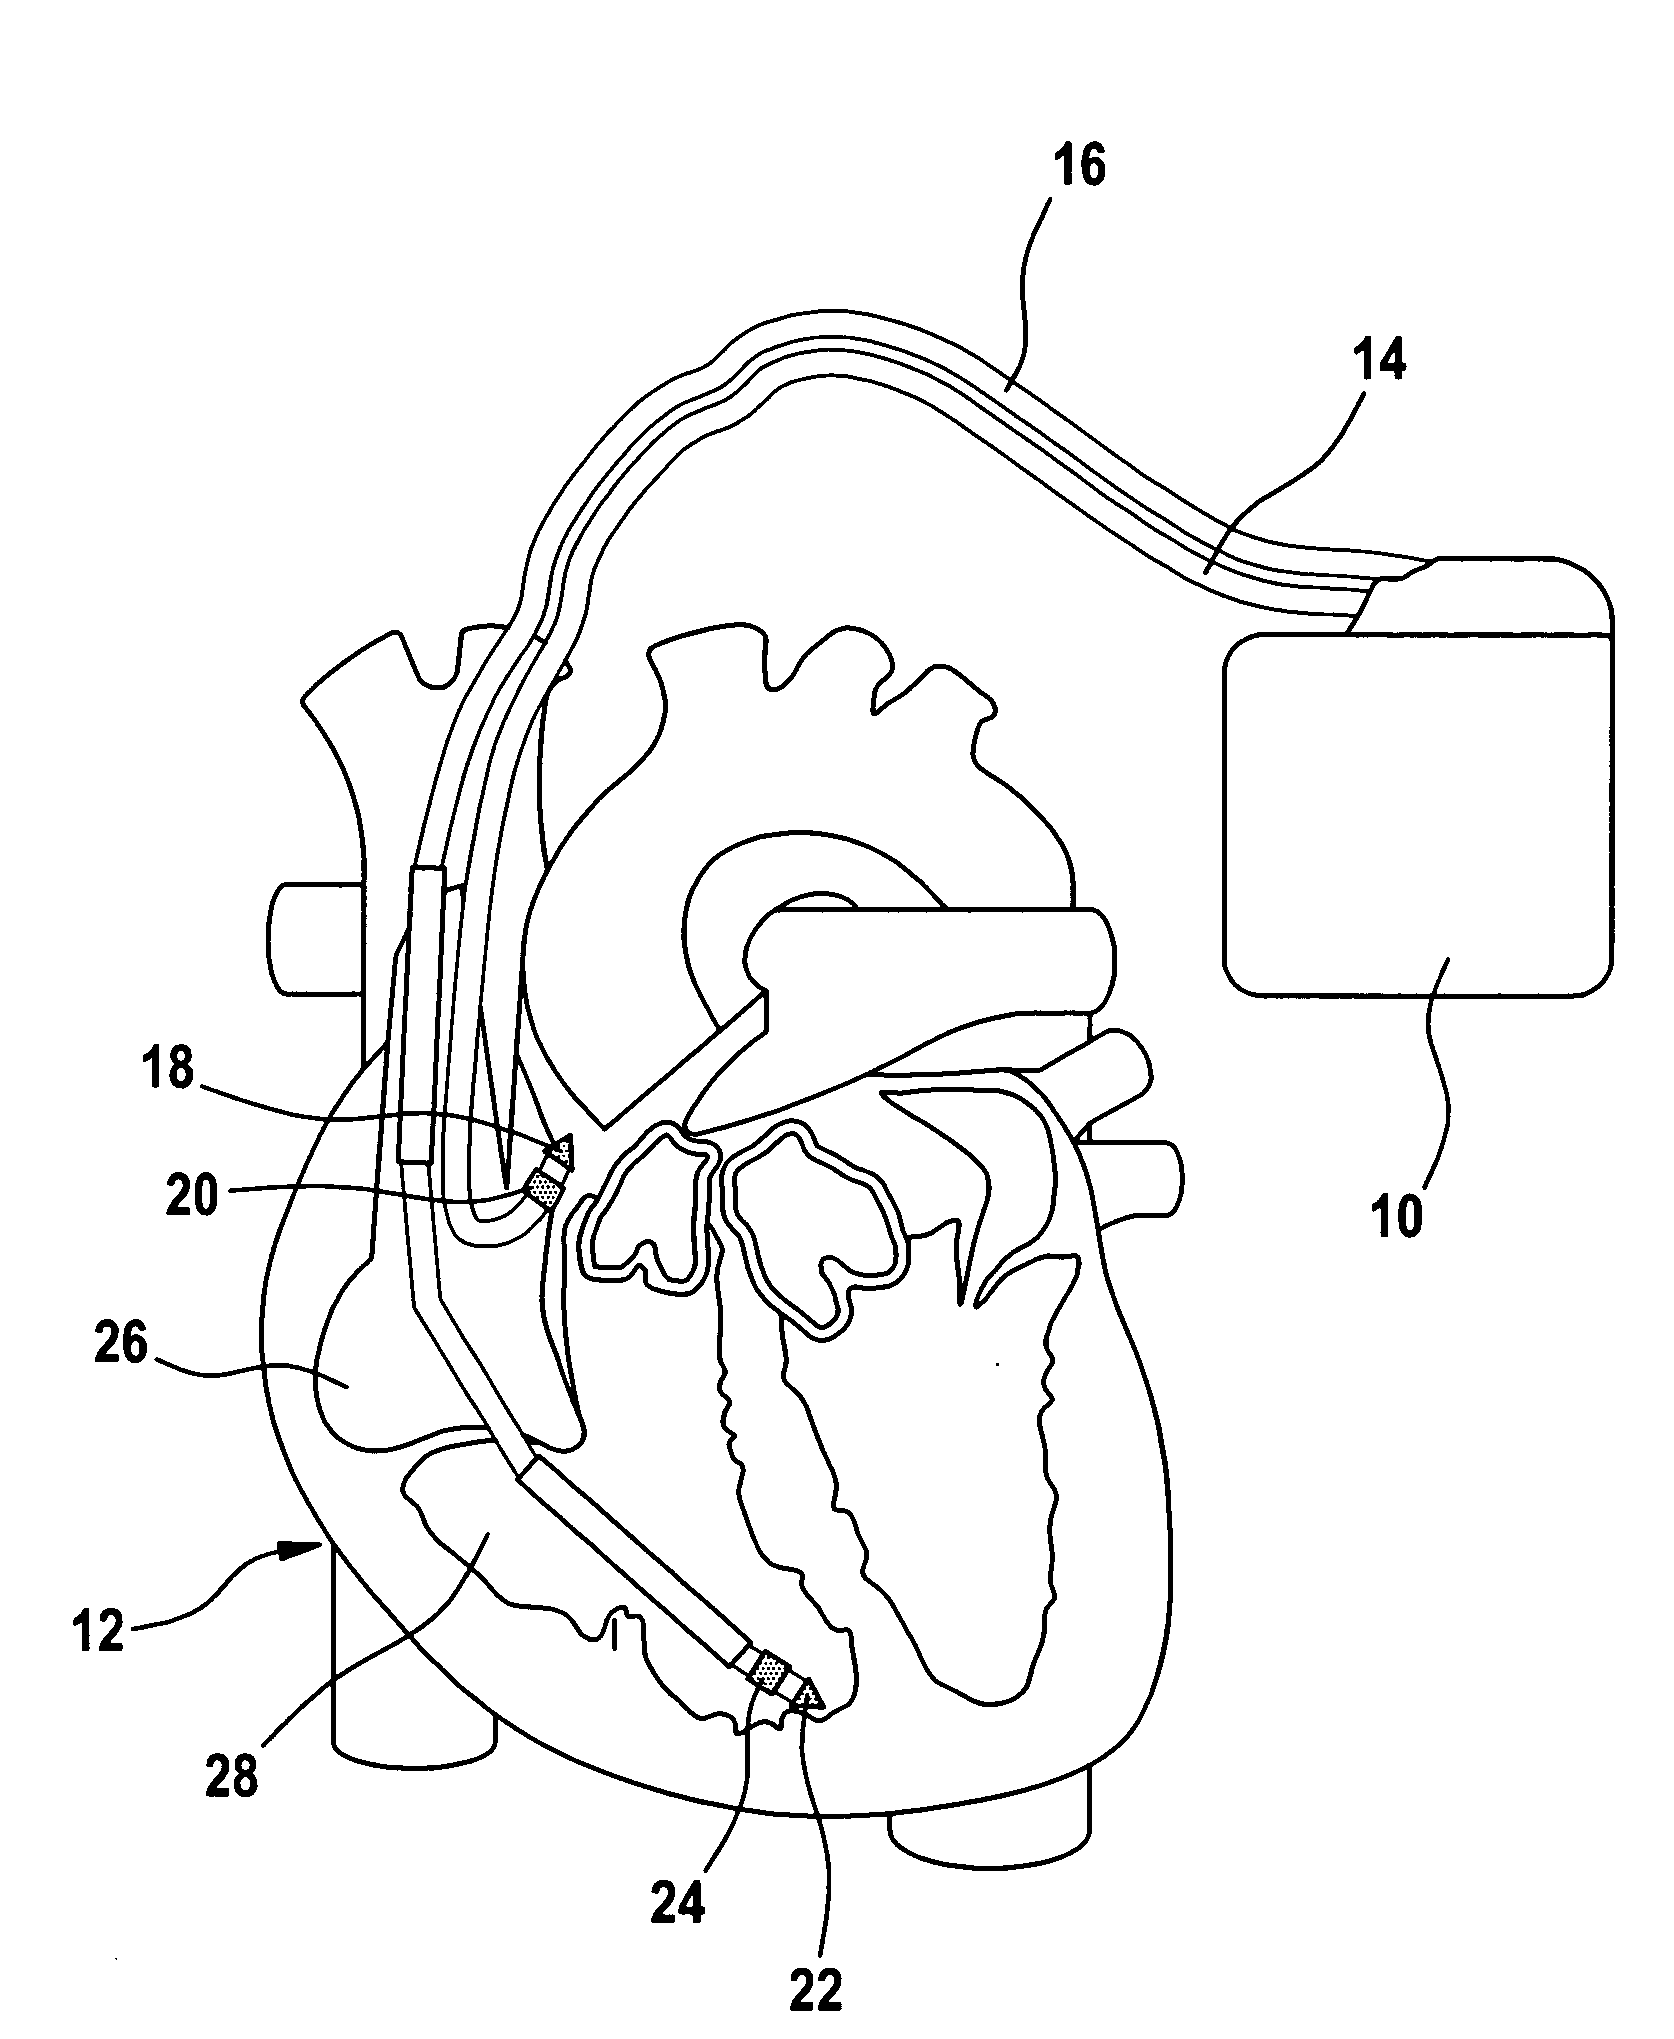 Cardiac pacemaker